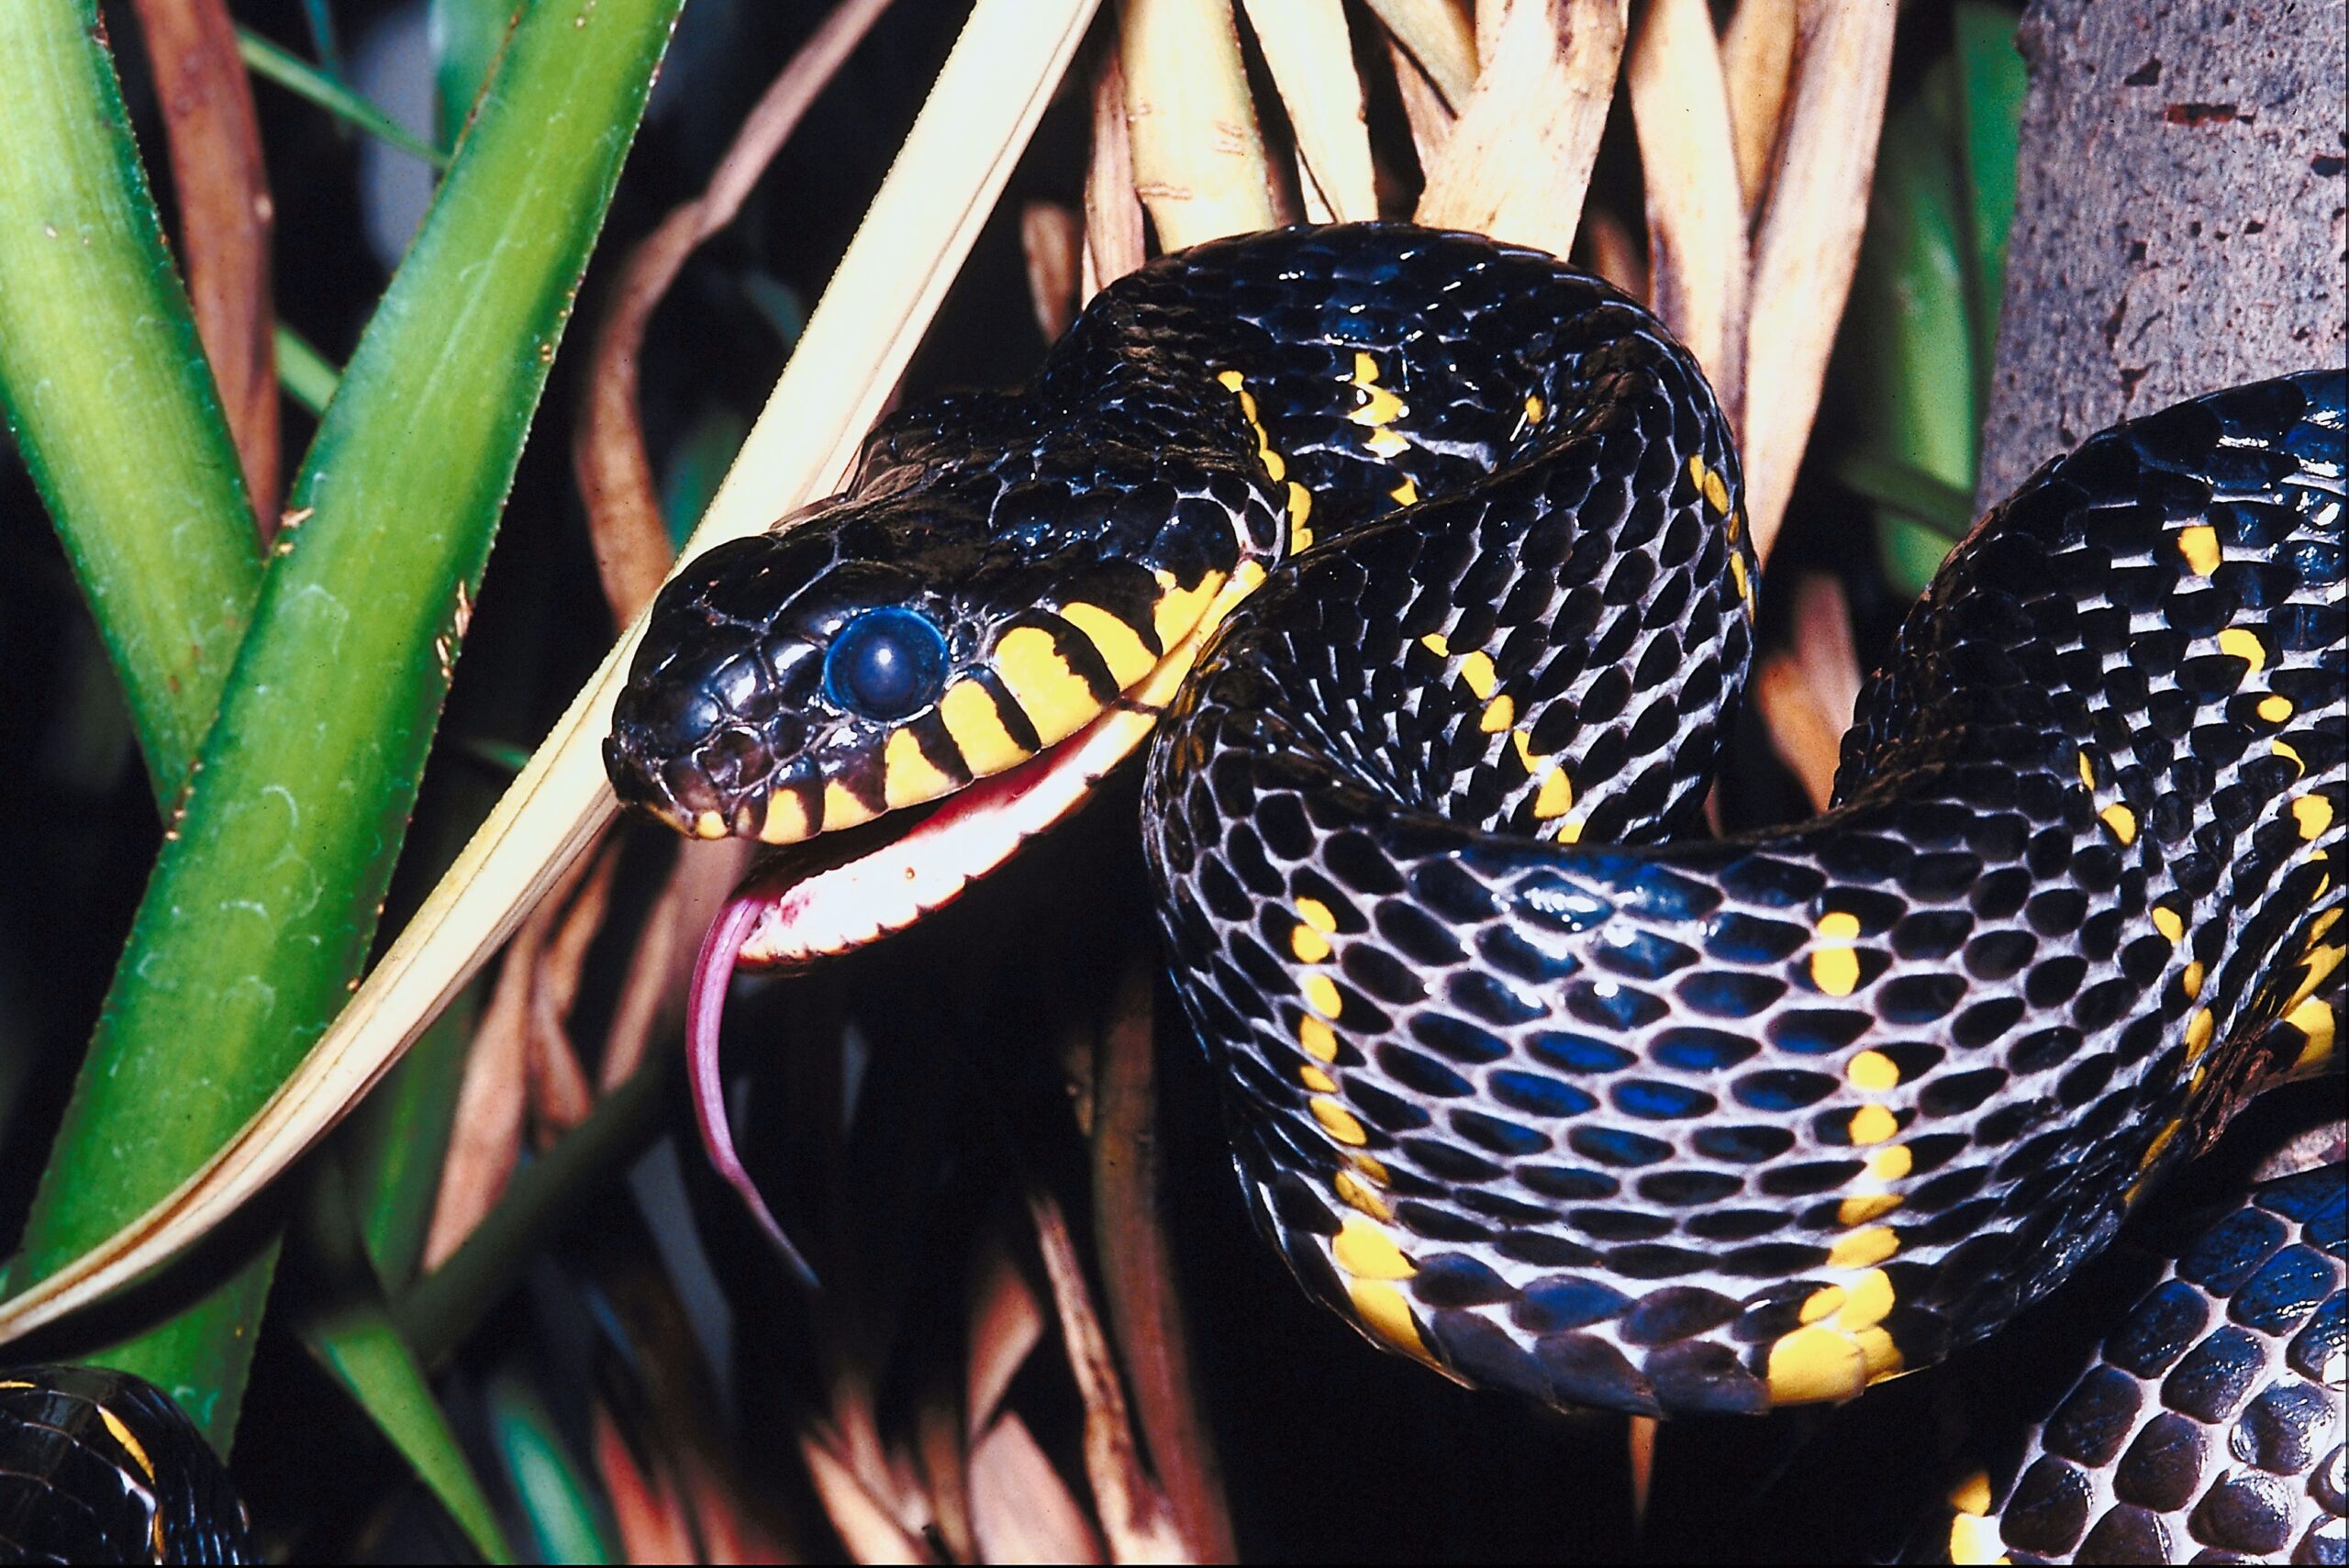 Mangrove snake фото